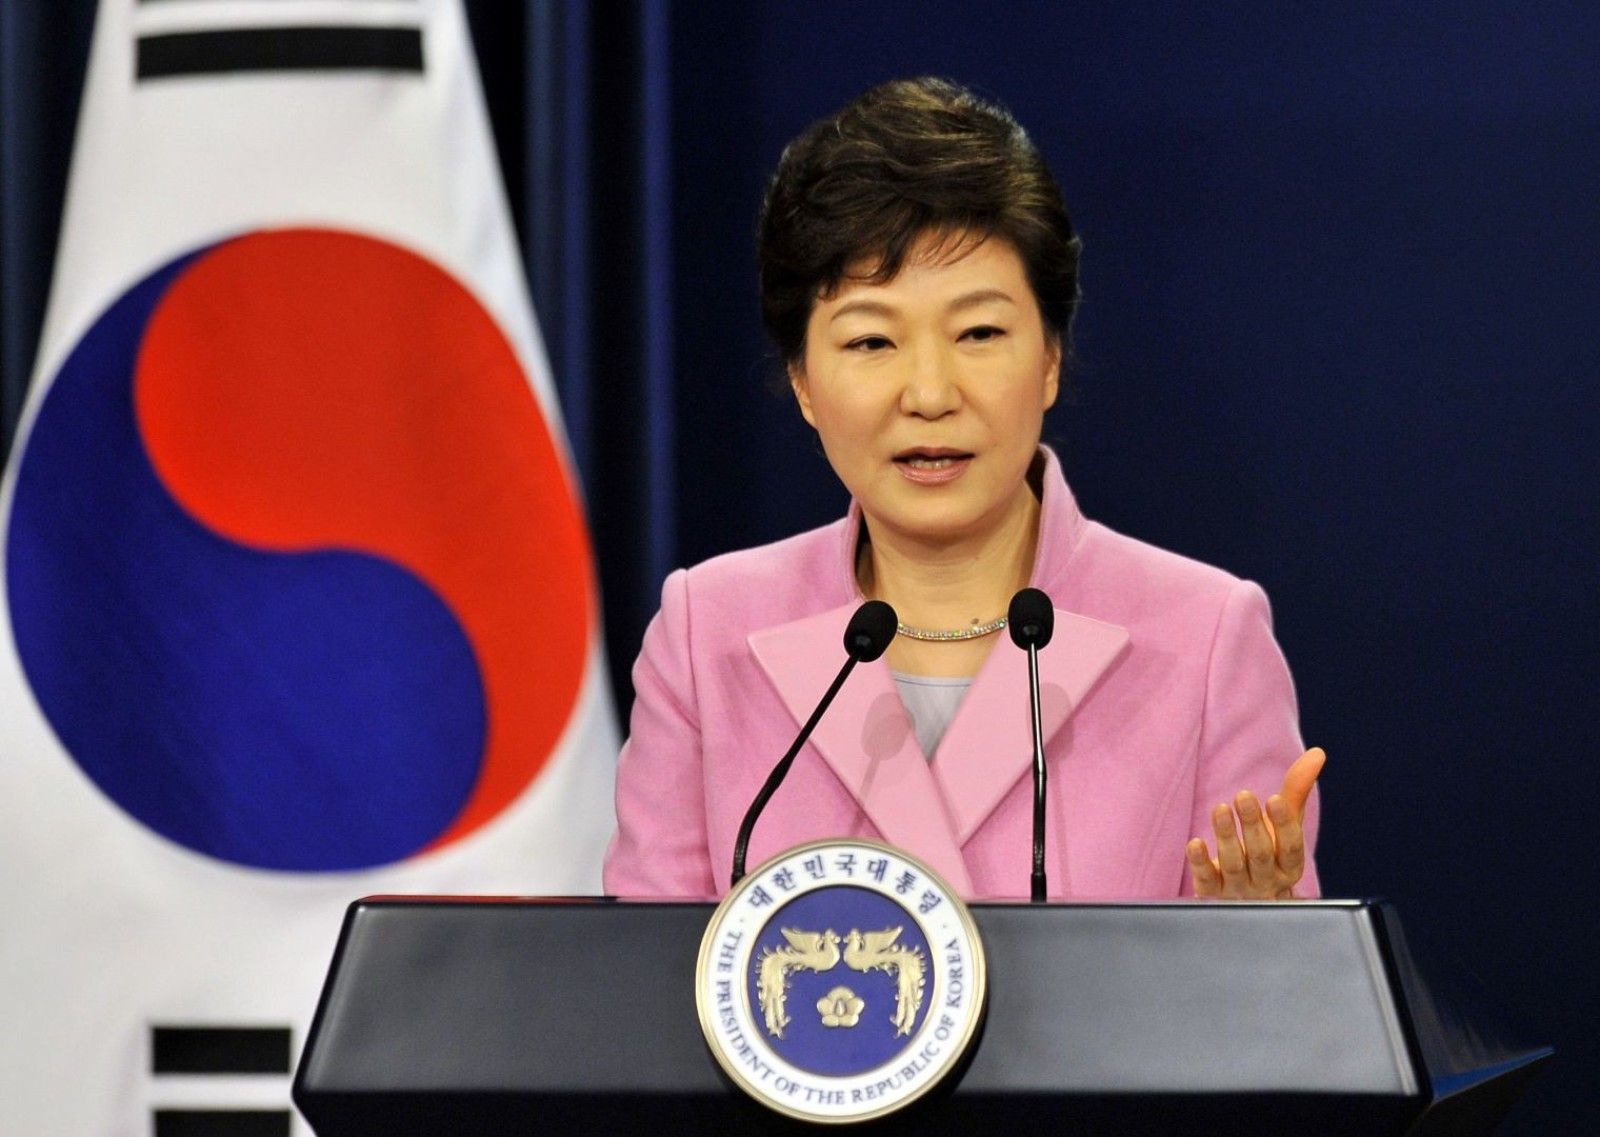 Preşedinta Coreei de Sud a fot destituită